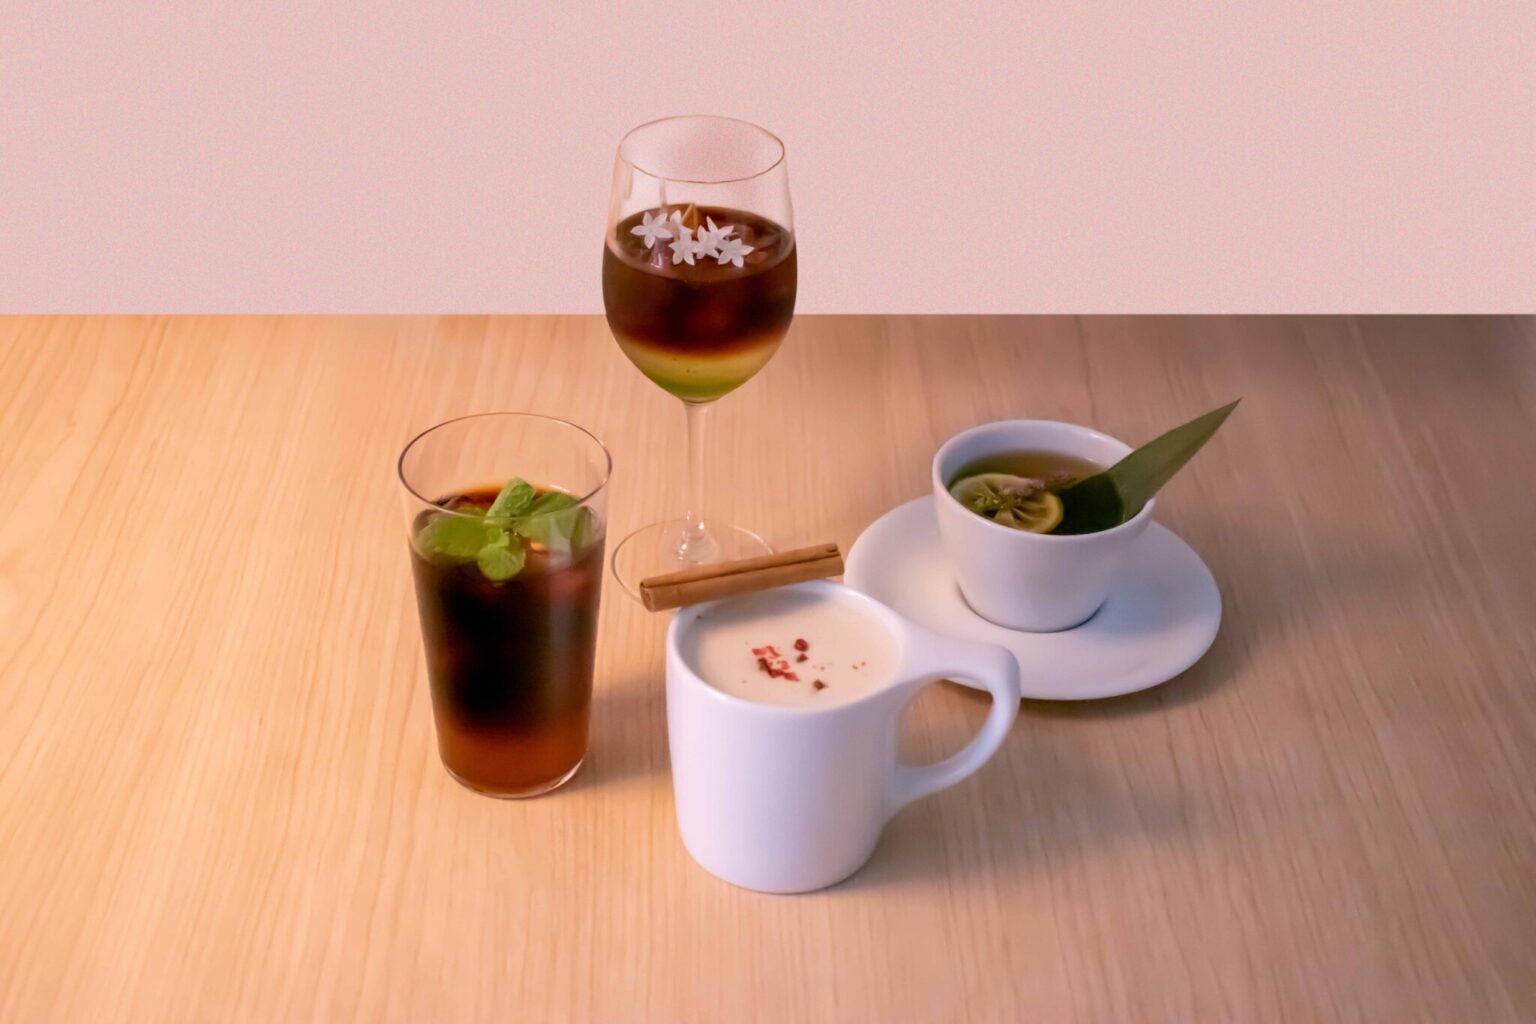 （写真左から時計回りに）水出しコーヒーやローズヒップを合わせるなどし、すっきりとした味わいに仕上げた「CASCARA-ROSE」（「Cascara」使用）。華やかな風味のコールドドリンク「BLOOM」（「Flower」使用）。ジャスミンティーを用いて爽やかな風味に仕上げた「碧の雫」（「Leaf」使用）。ミルクブリューにシナモンやクローブを漬け込みアクセントを利かせた「杜のかおり」（「Wood」使用）。11月1日～30日にかけて〈小川珈琲 堺町錦店〉〈OGAWA COFFEE LABORATORY 桜新町〉〈OGAWA COFFEE LABORATORY 下北沢〉にて提供予定。